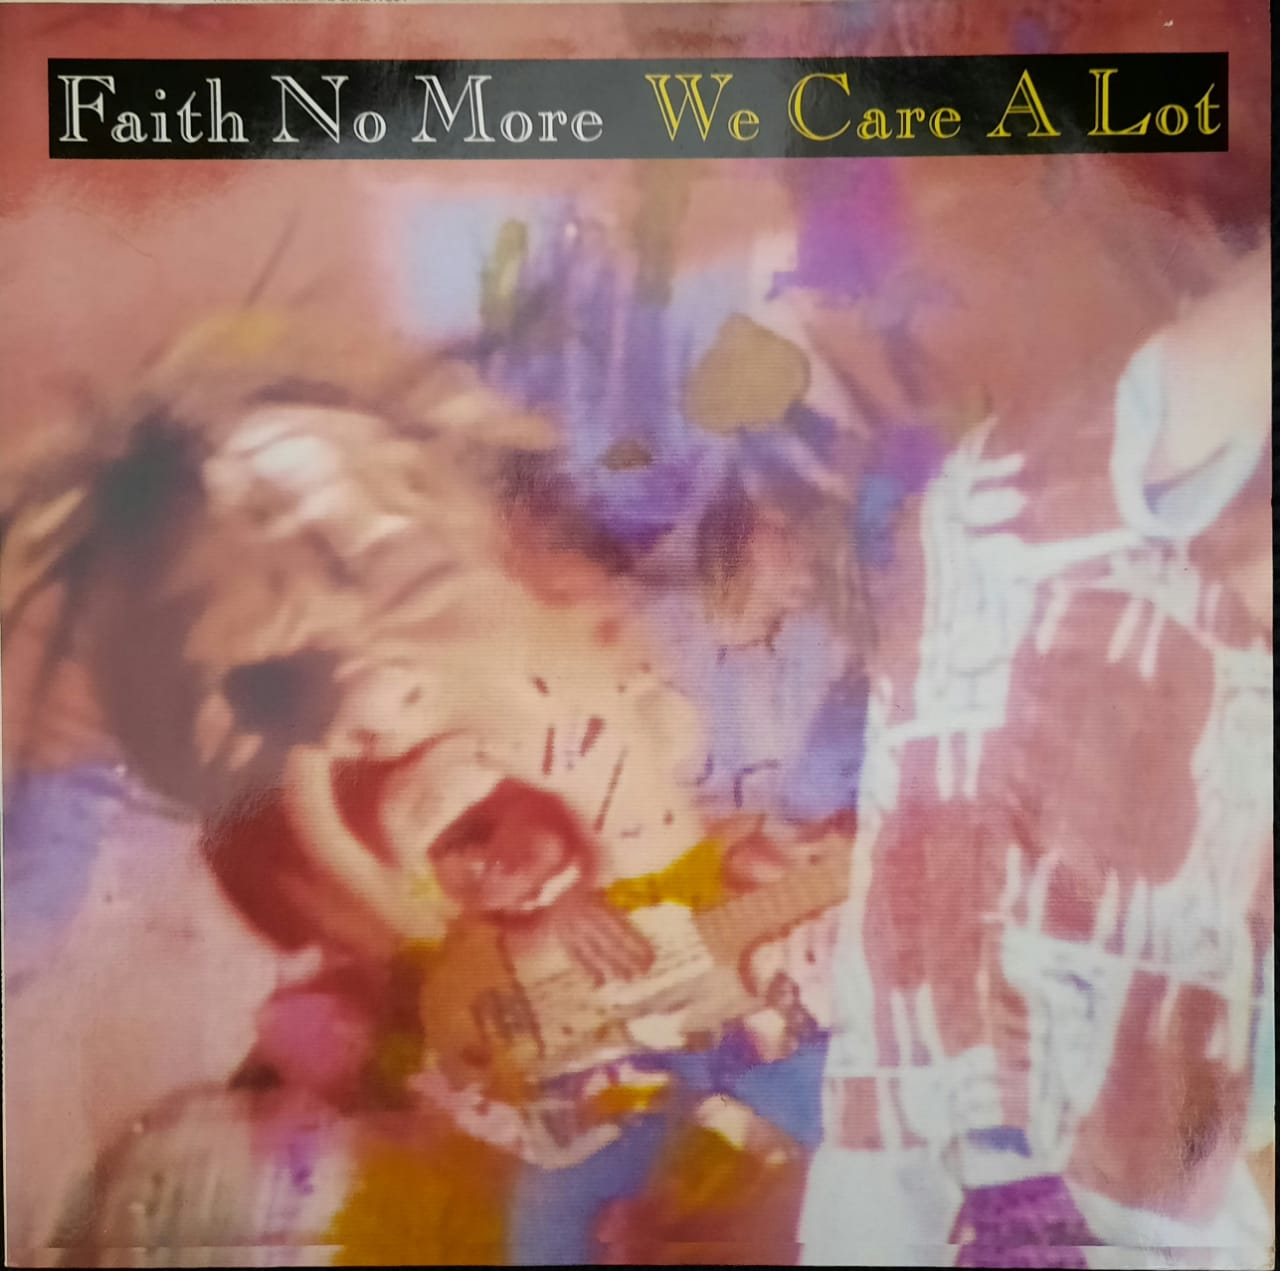 We Care a Lot - Album by Faith No More